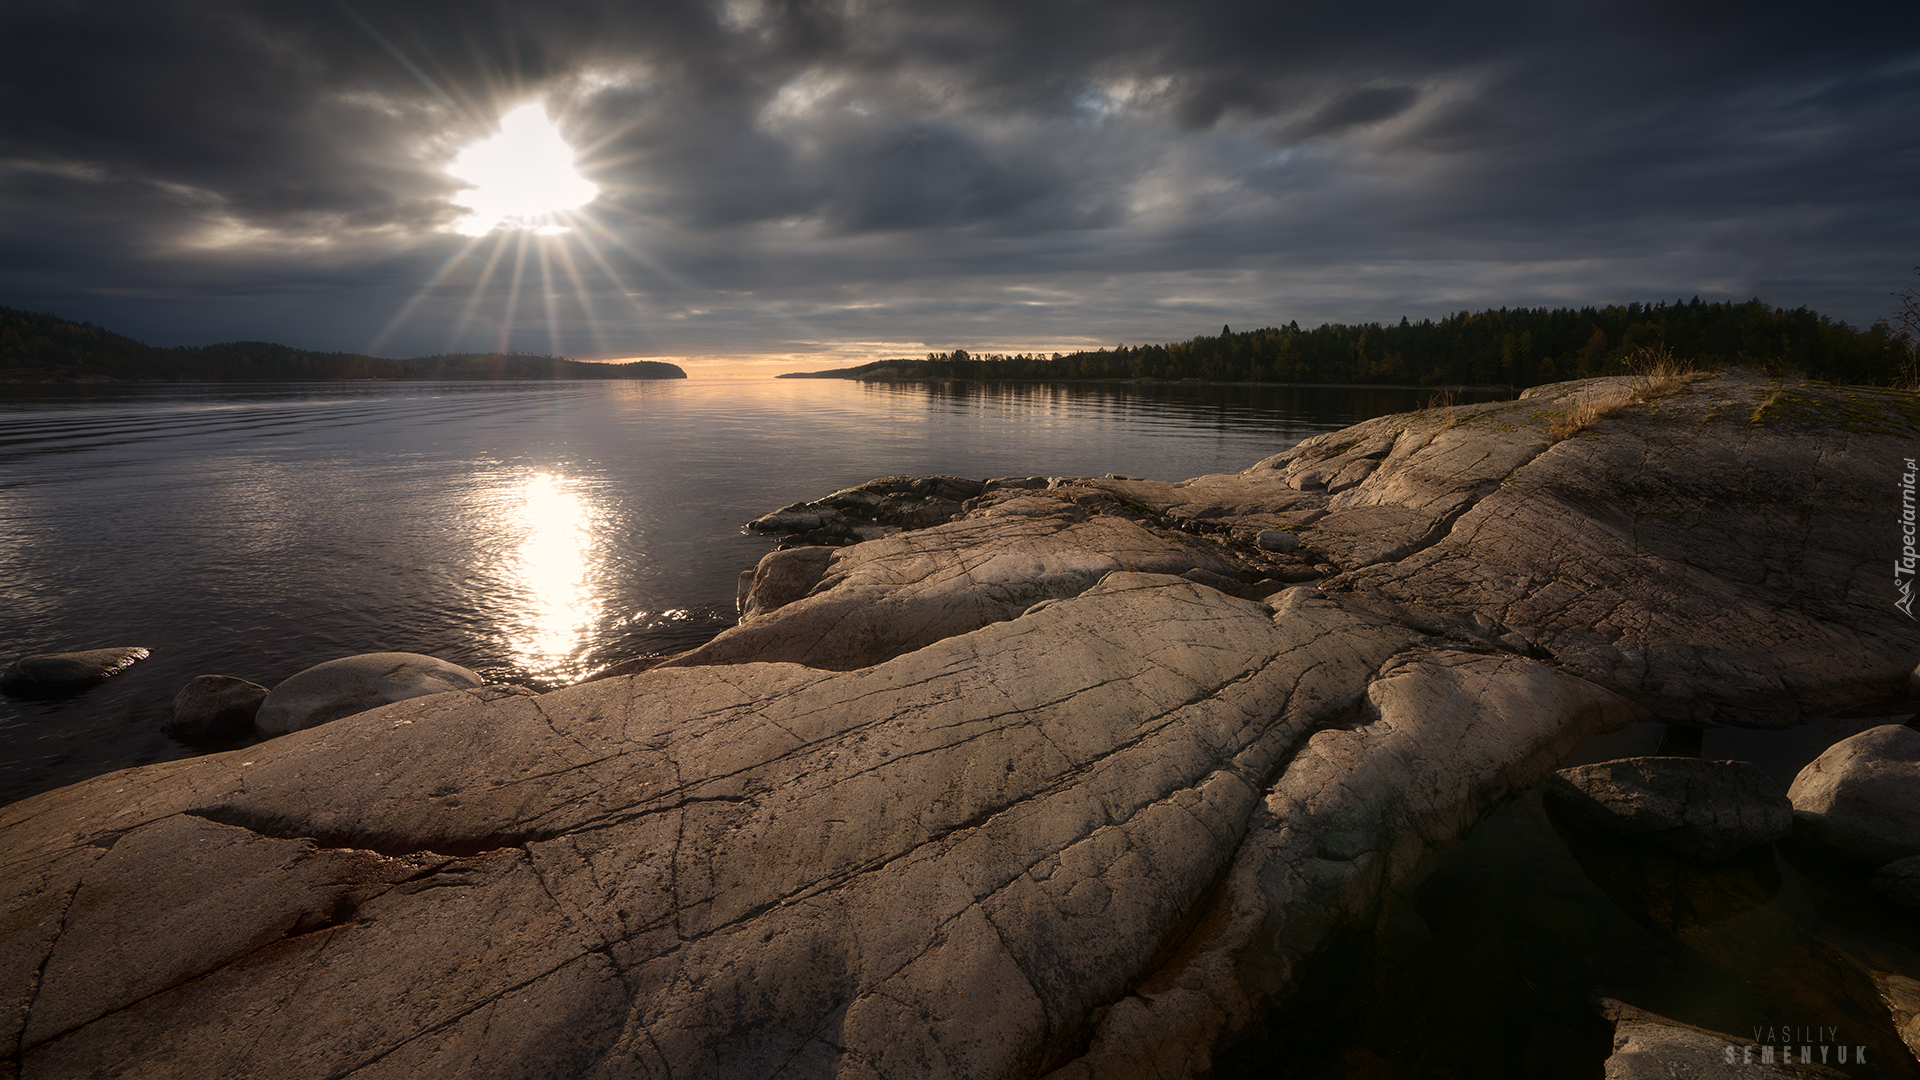 Jezioro Ładoga, Skały, Ciemne, Chmury, Wschód słońca, Karelia, Rosja